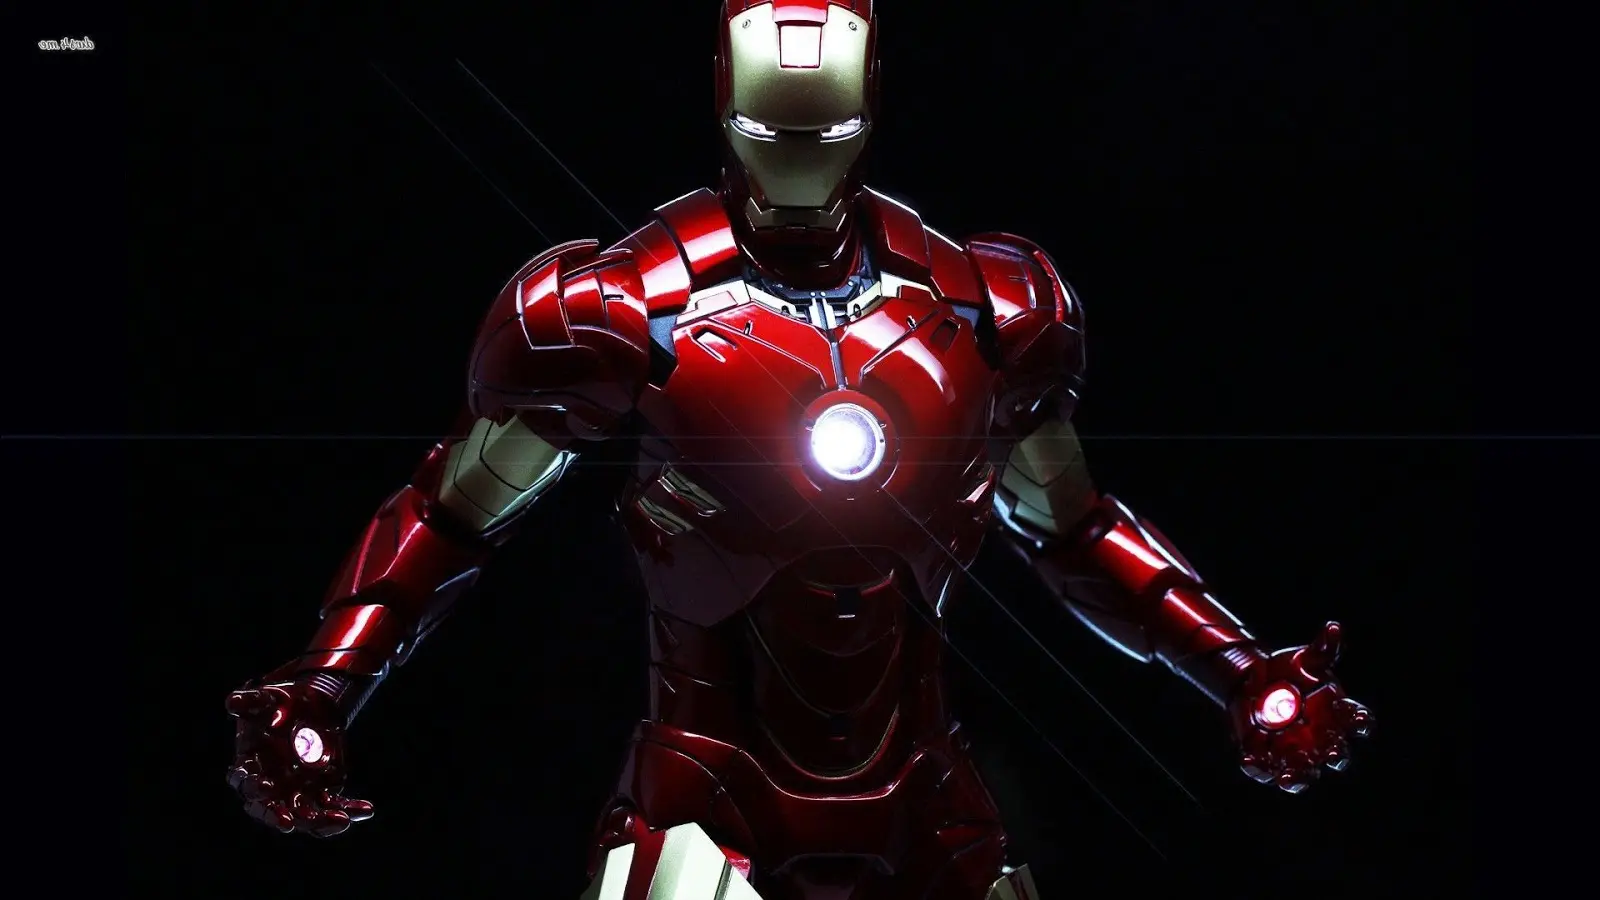 Memberi Anda 999 Gambar Iron Man Keren, Cantik, dan Berkualitas Tinggi